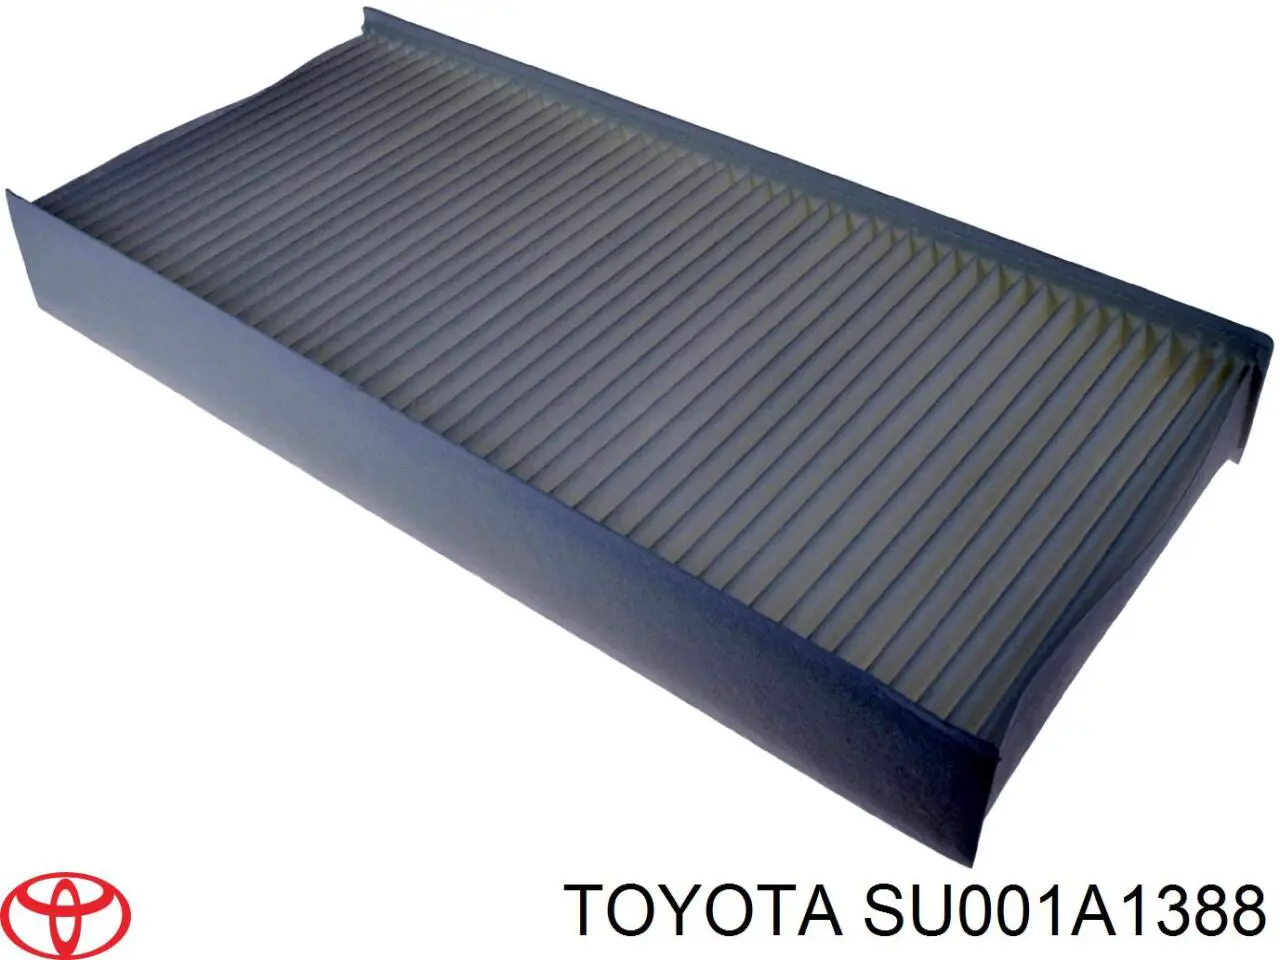 SU001A1388 Toyota 